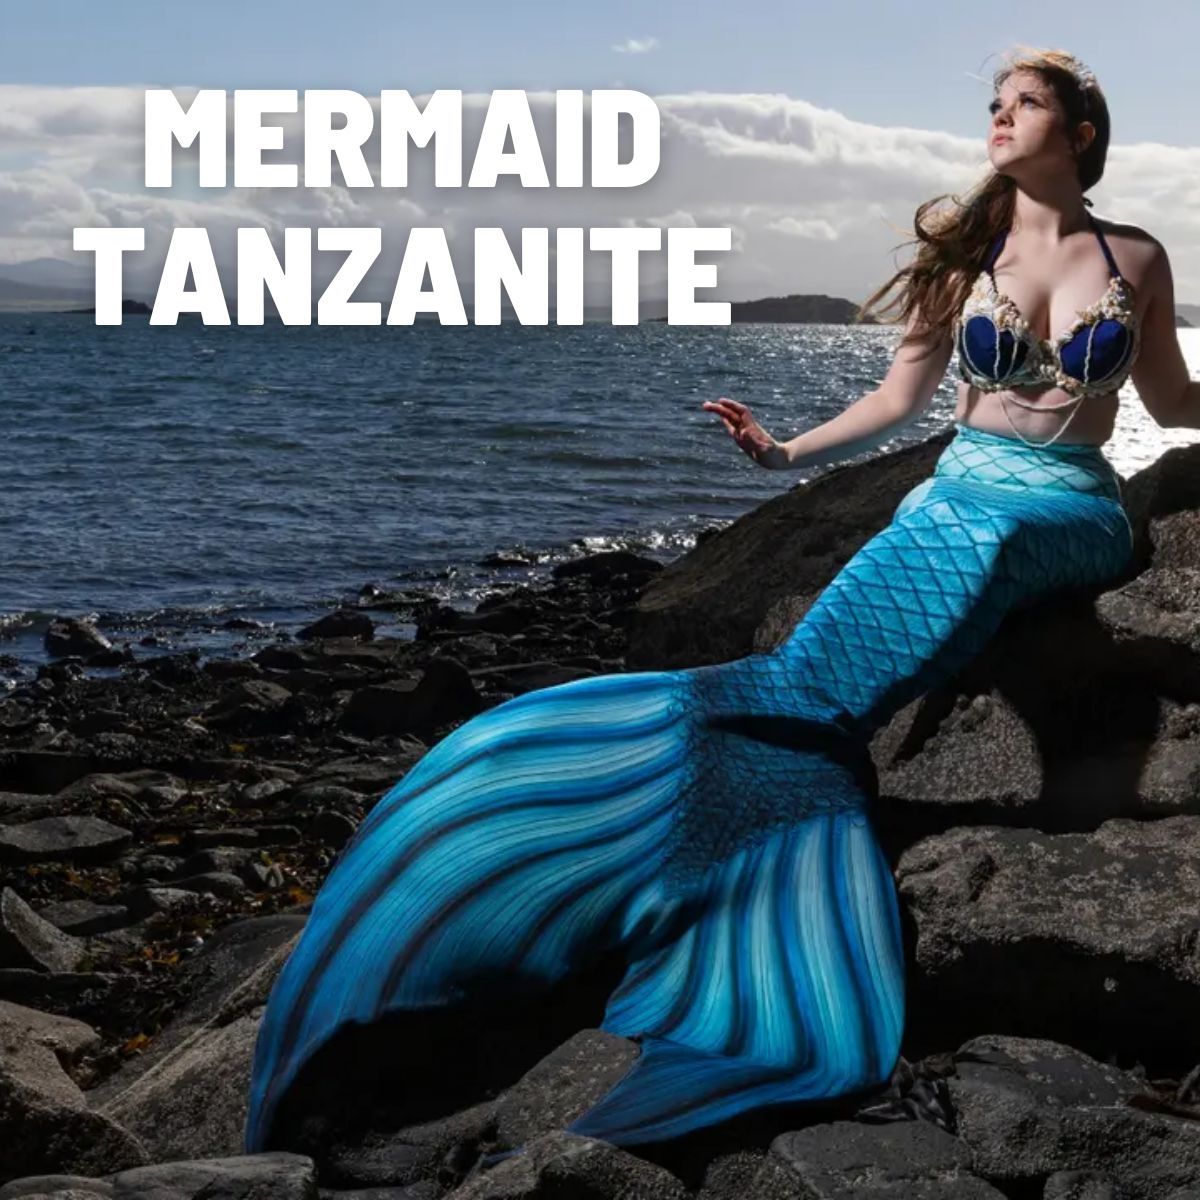 Mermaid Tanzanite: What is It?